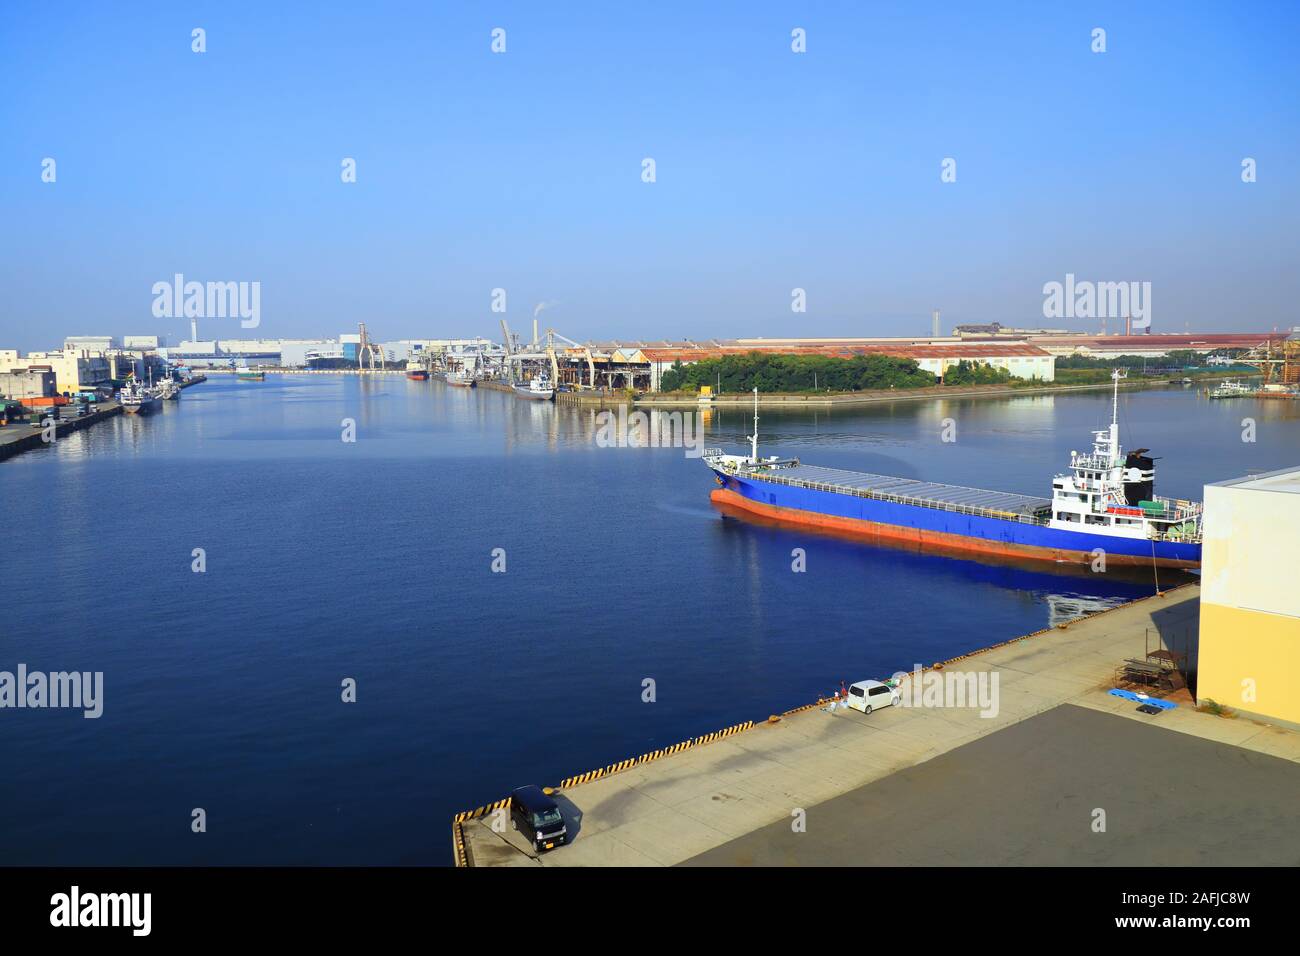 Ein Frachtraum Japan Küsten Schiff im Hafen von Fabrikhallen auf Osaka Bay, Japan umgeben ist. Stockfoto